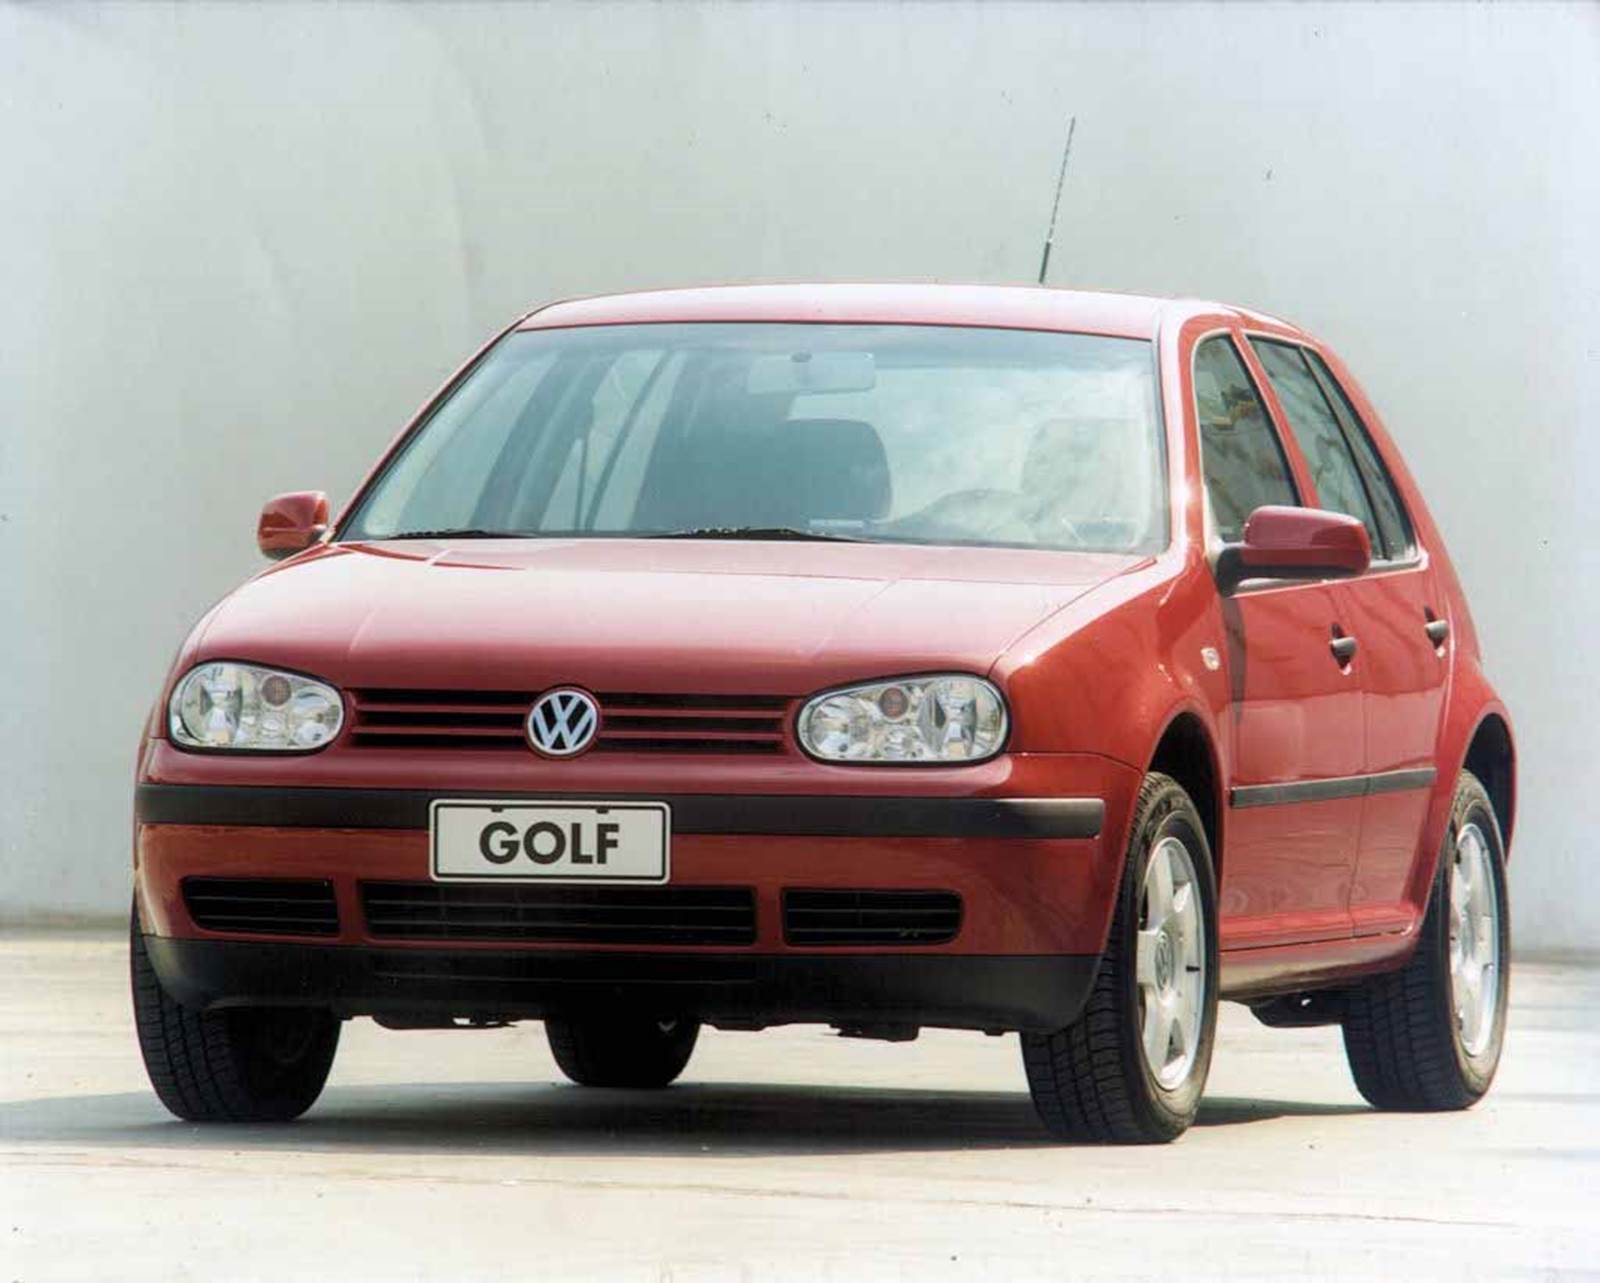 Volkswagen Golf 2001 1.6 EA111 fotos e ficha técnica